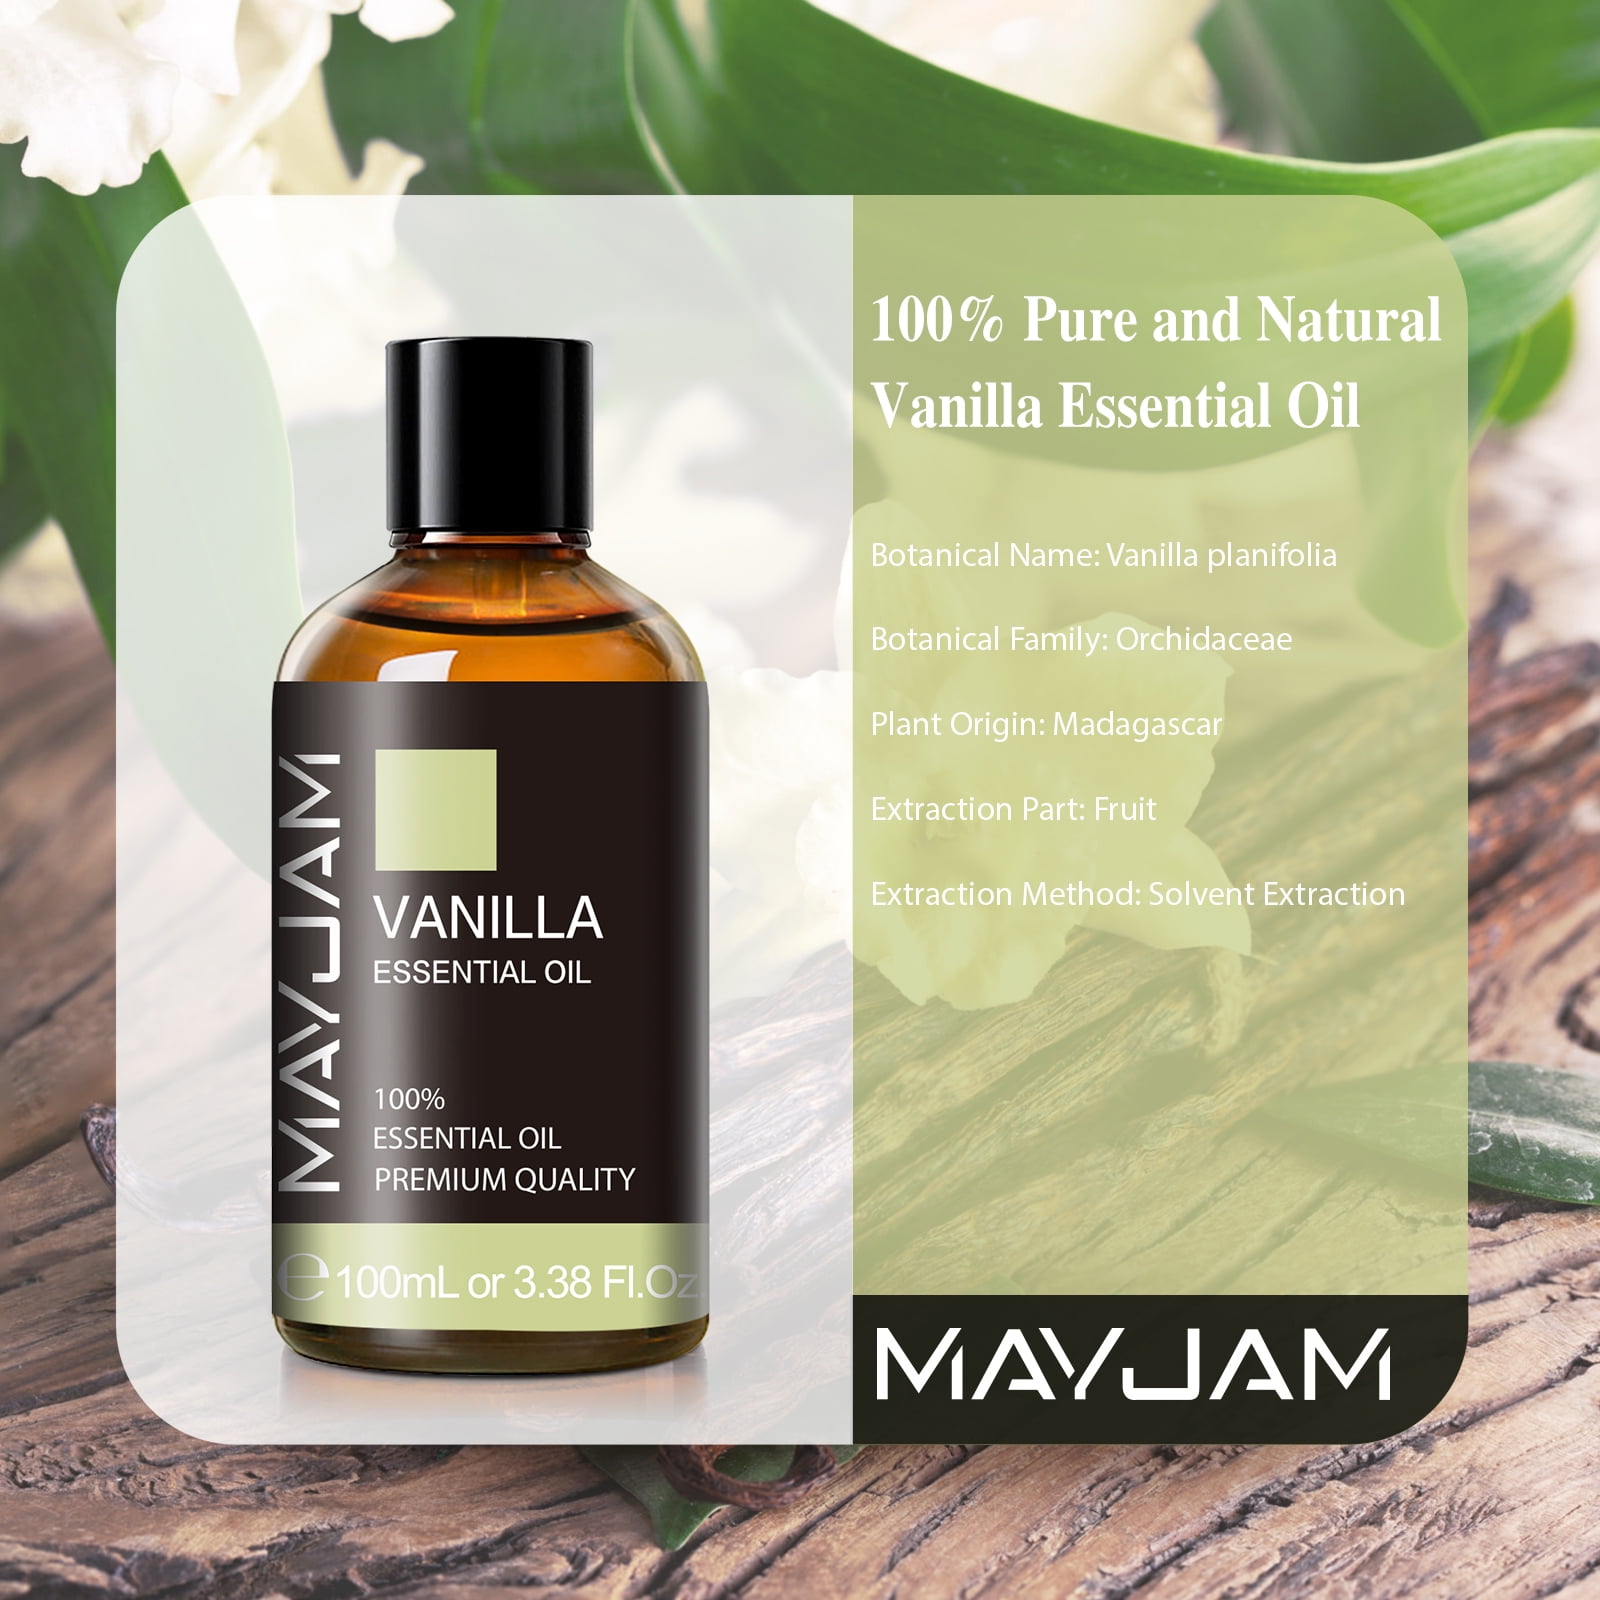 2-Pack Vanilla Essential Oil - 100% Pure Organic Natural Plant (Vanilla  planifolia) Vanilla Oil for Diffuser, Aroma, Spa, Massage, Yoga, Perfume,  Body